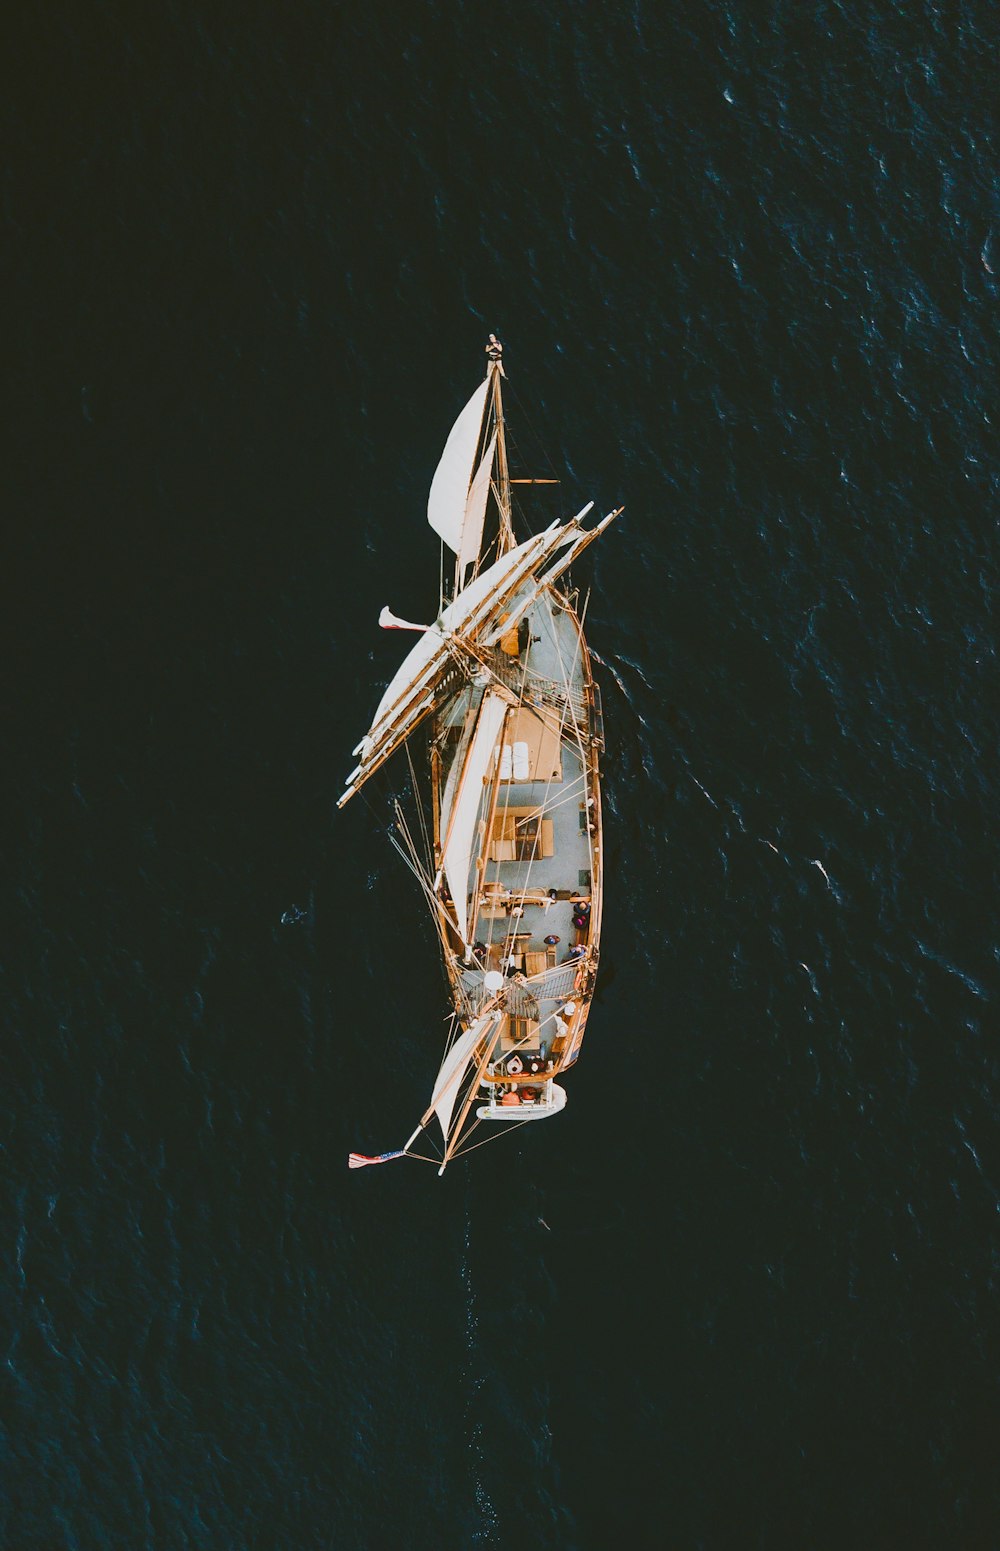 水域の茶色のガレオン船の航空写真